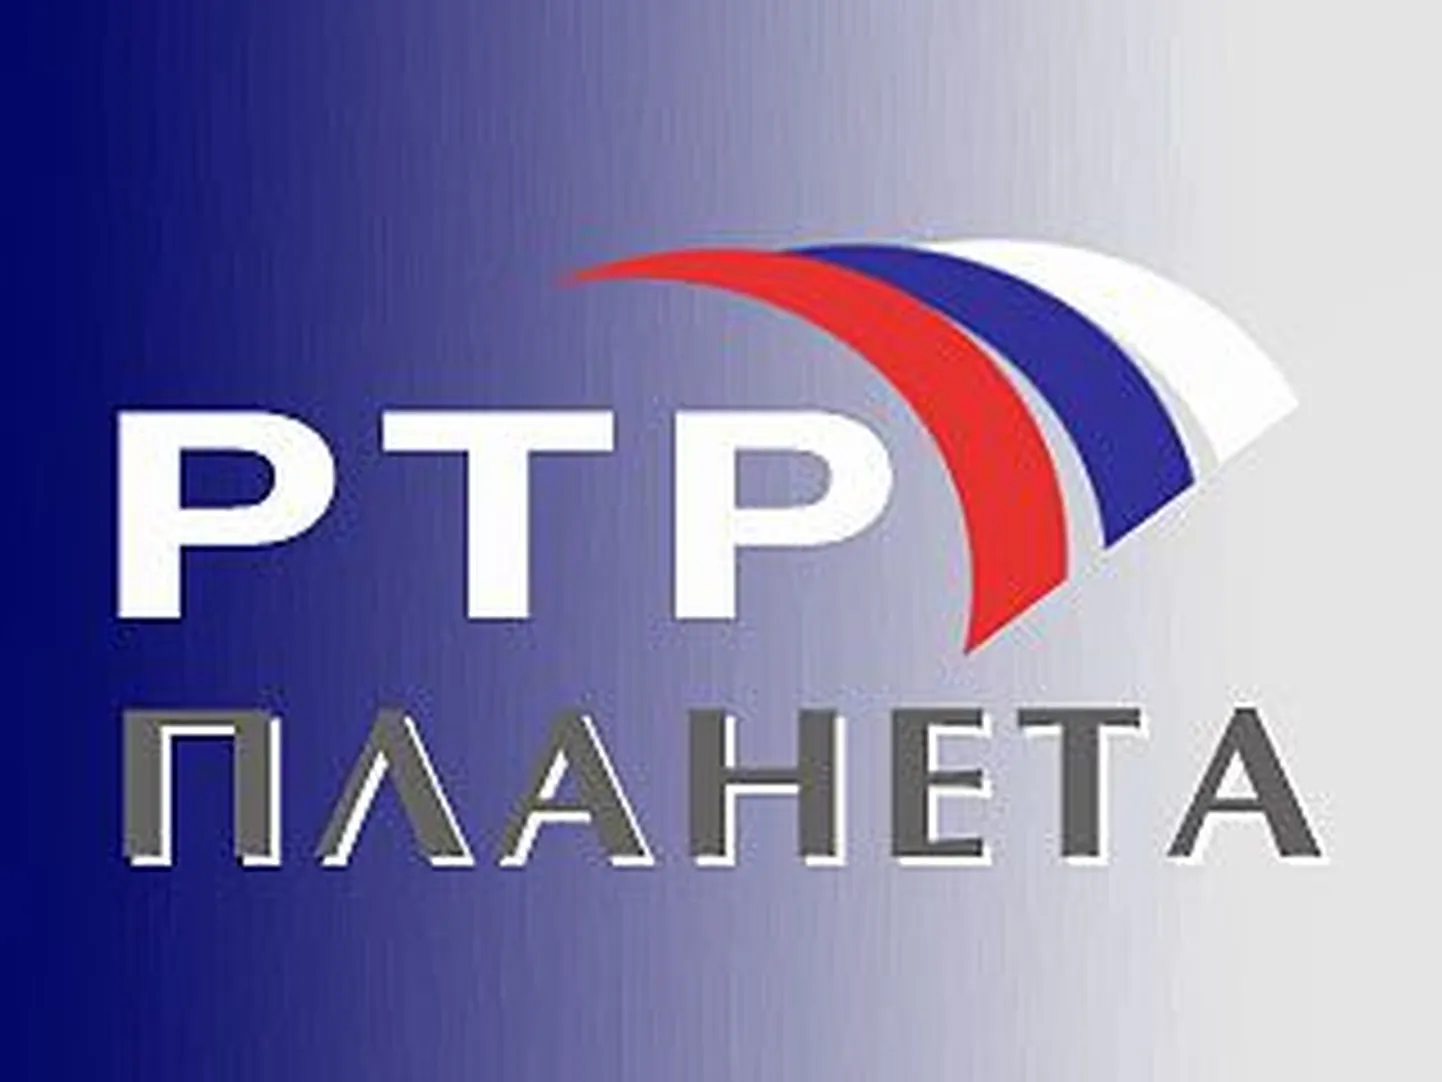 Telekanali RTR Planeta logo.